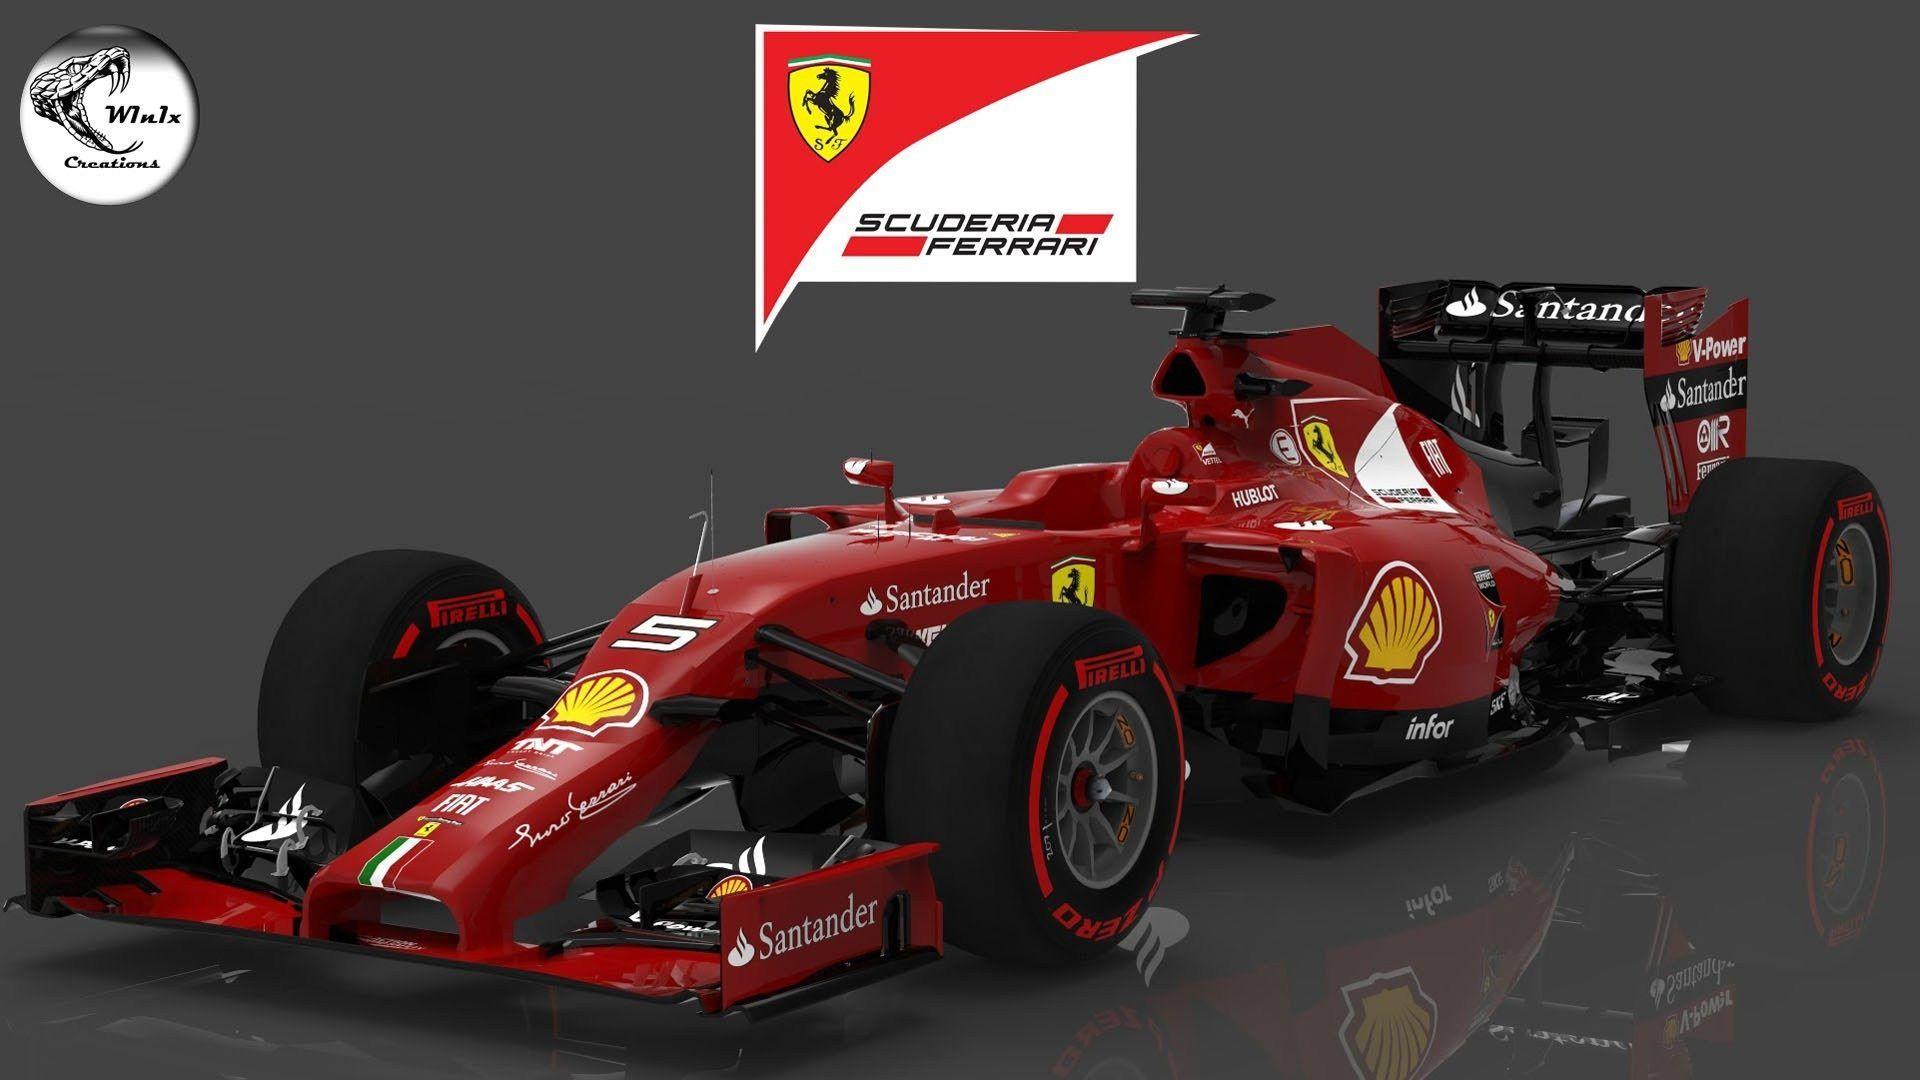 F1 HD 2018 Ferrari Wallpaper, 2018 Ferrari Wallpaper. HD